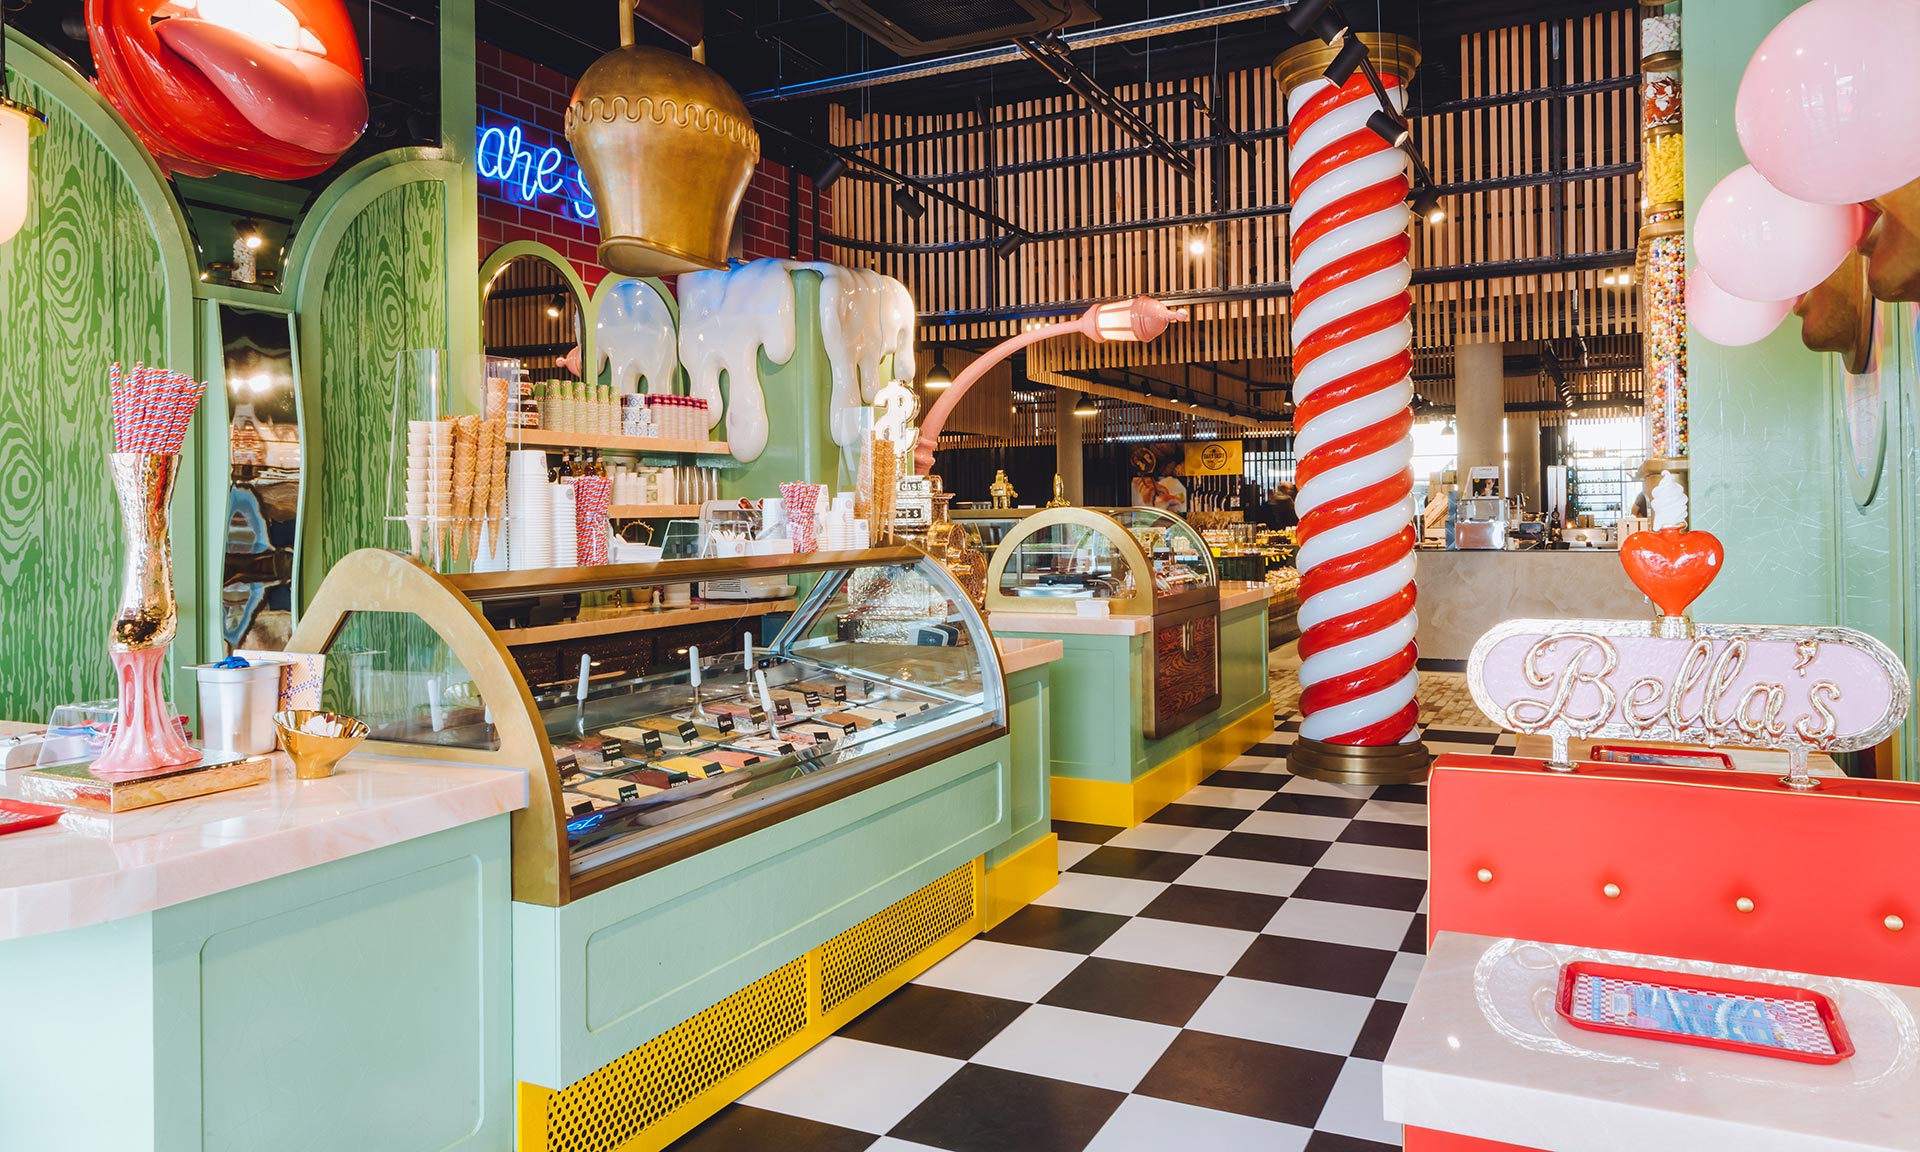 Studio Job vytvořilo bláznivý a hravý interiér pro cukrárnu Bella’s Ice & Candy Store